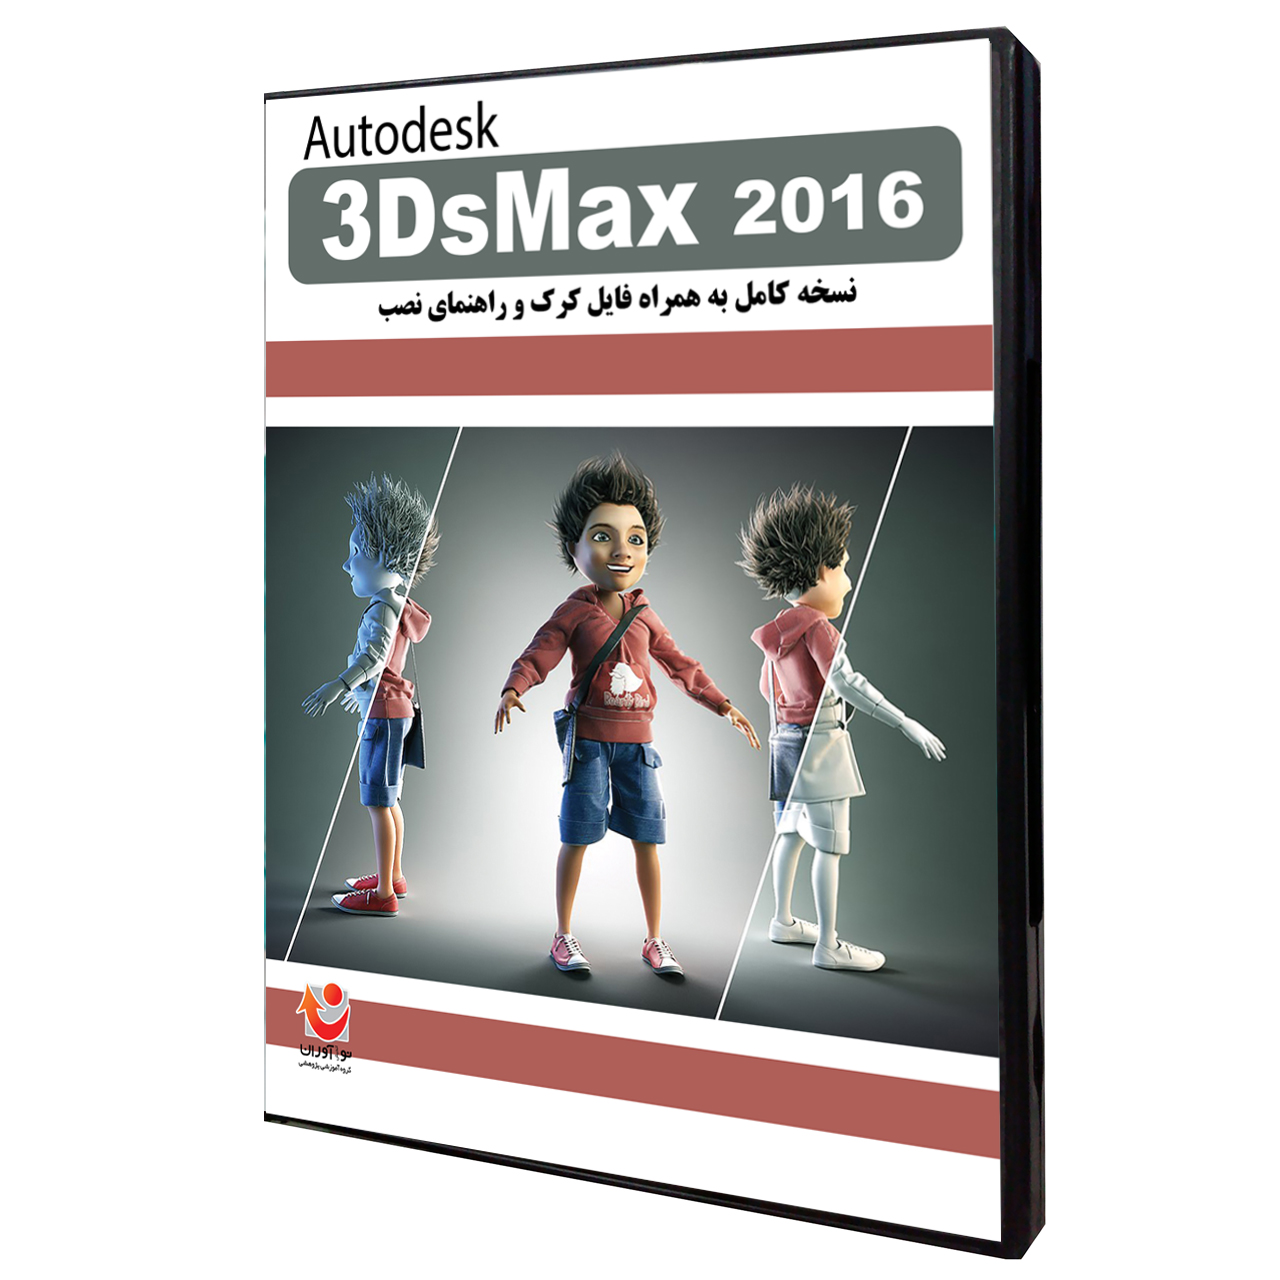 نرم افزار 3DsMax 2016 نشر نوآوران